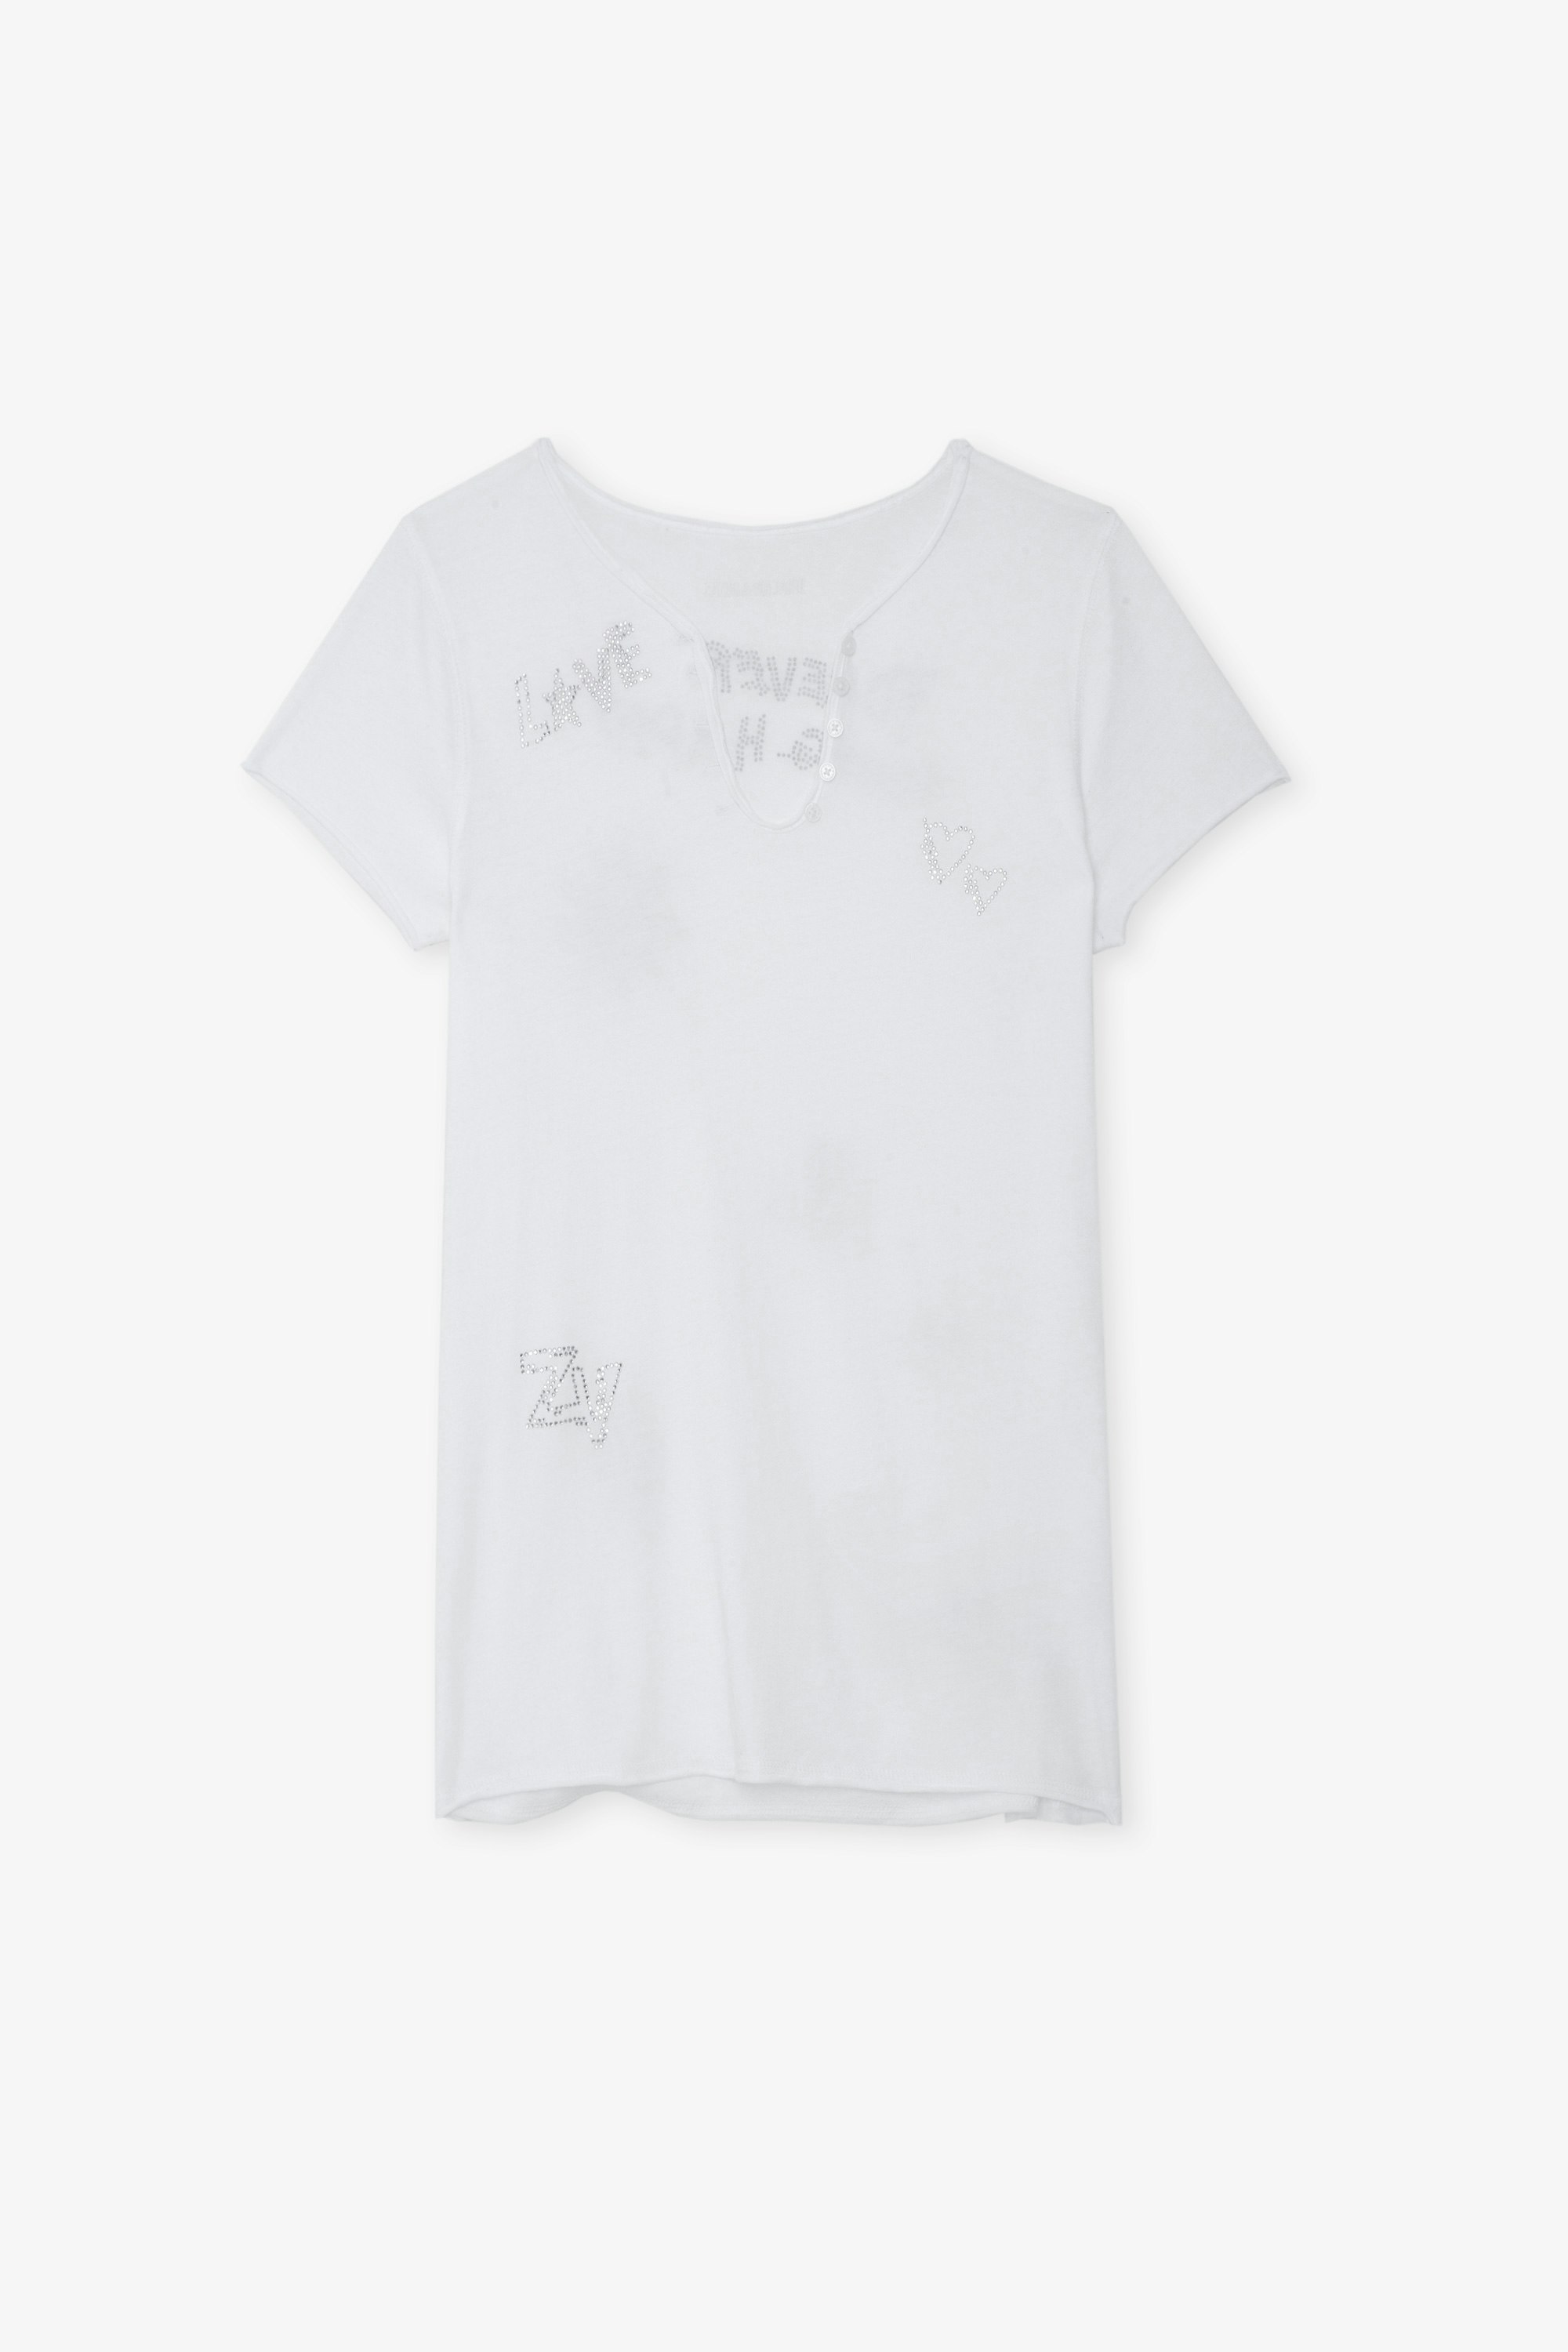 Serafino Strass - T-shirt serafino in cotone bianco con maniche corte e motivi ornati di strass.